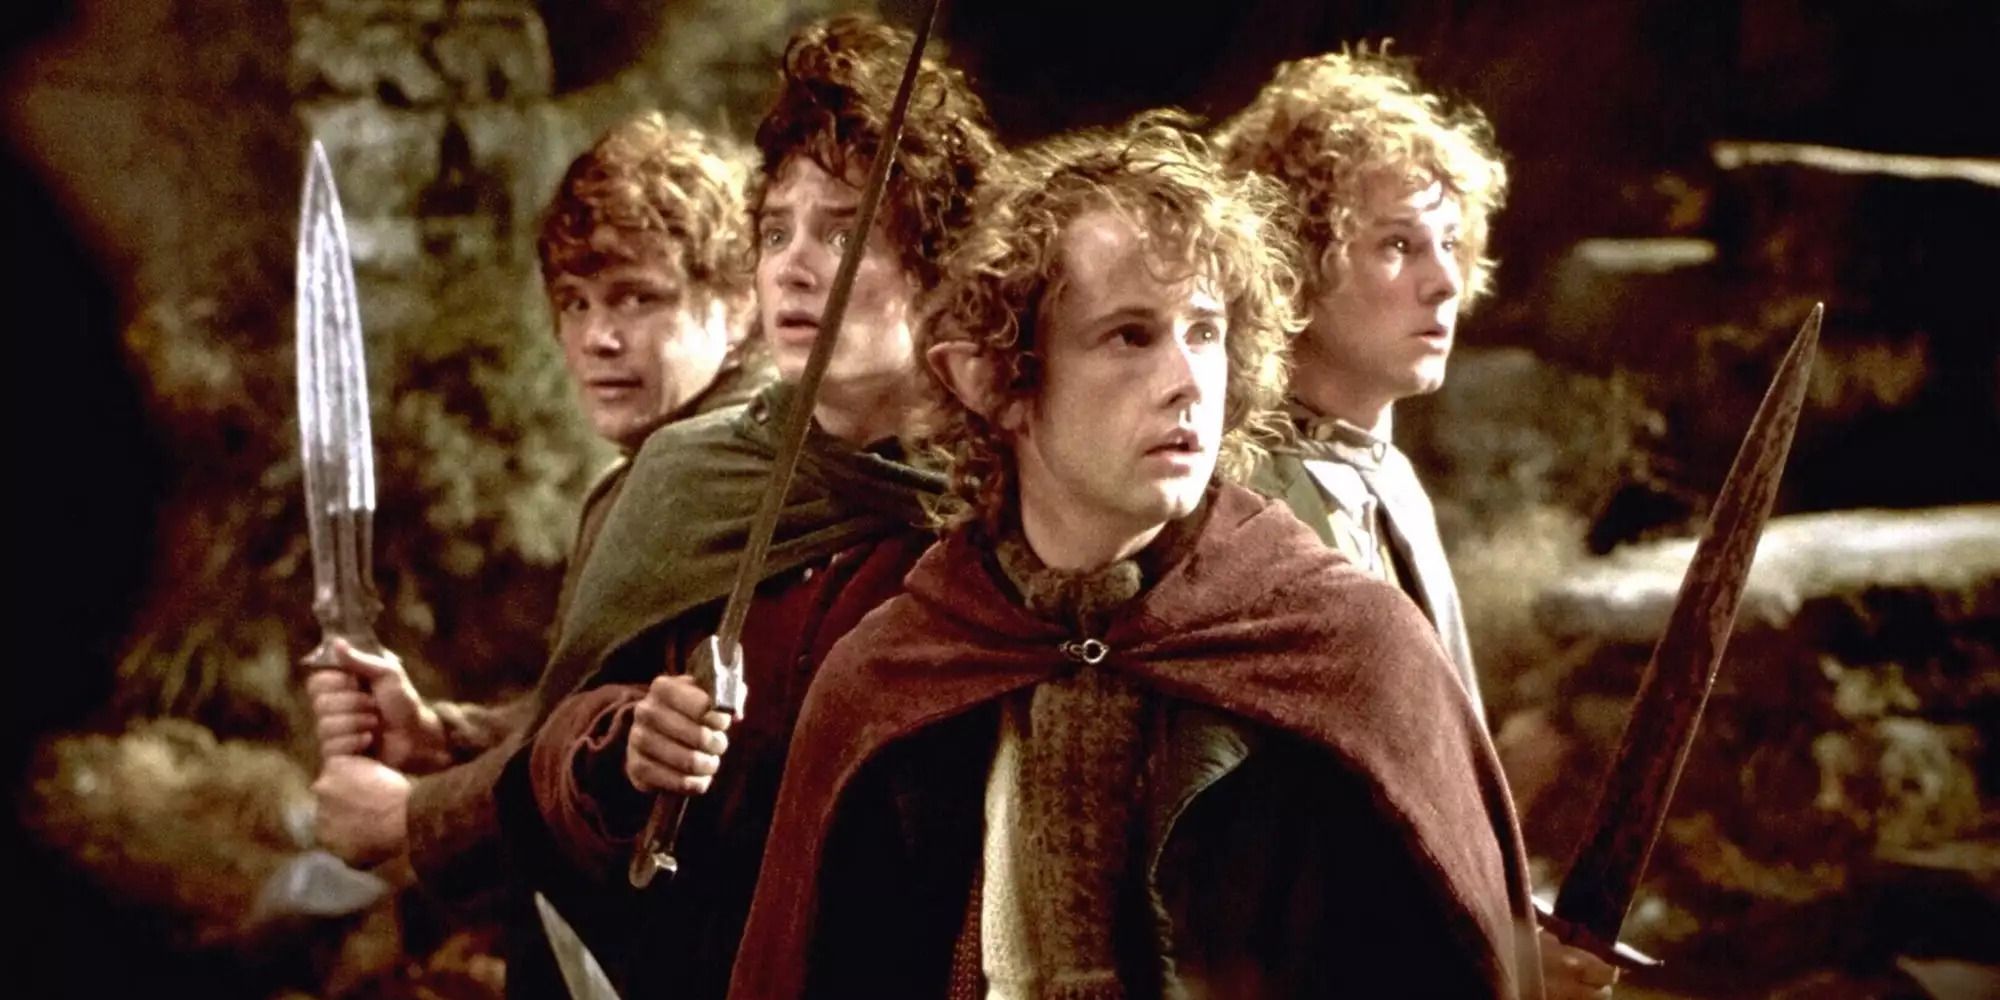 ฮอบบิท โฟรโด แซม เมอร์รี่ และปิ๊ปปิ้นถือดาบบนเวเธอร์ท็อปใน 'The Lord of the Rings: The Fellowship of the Ring'